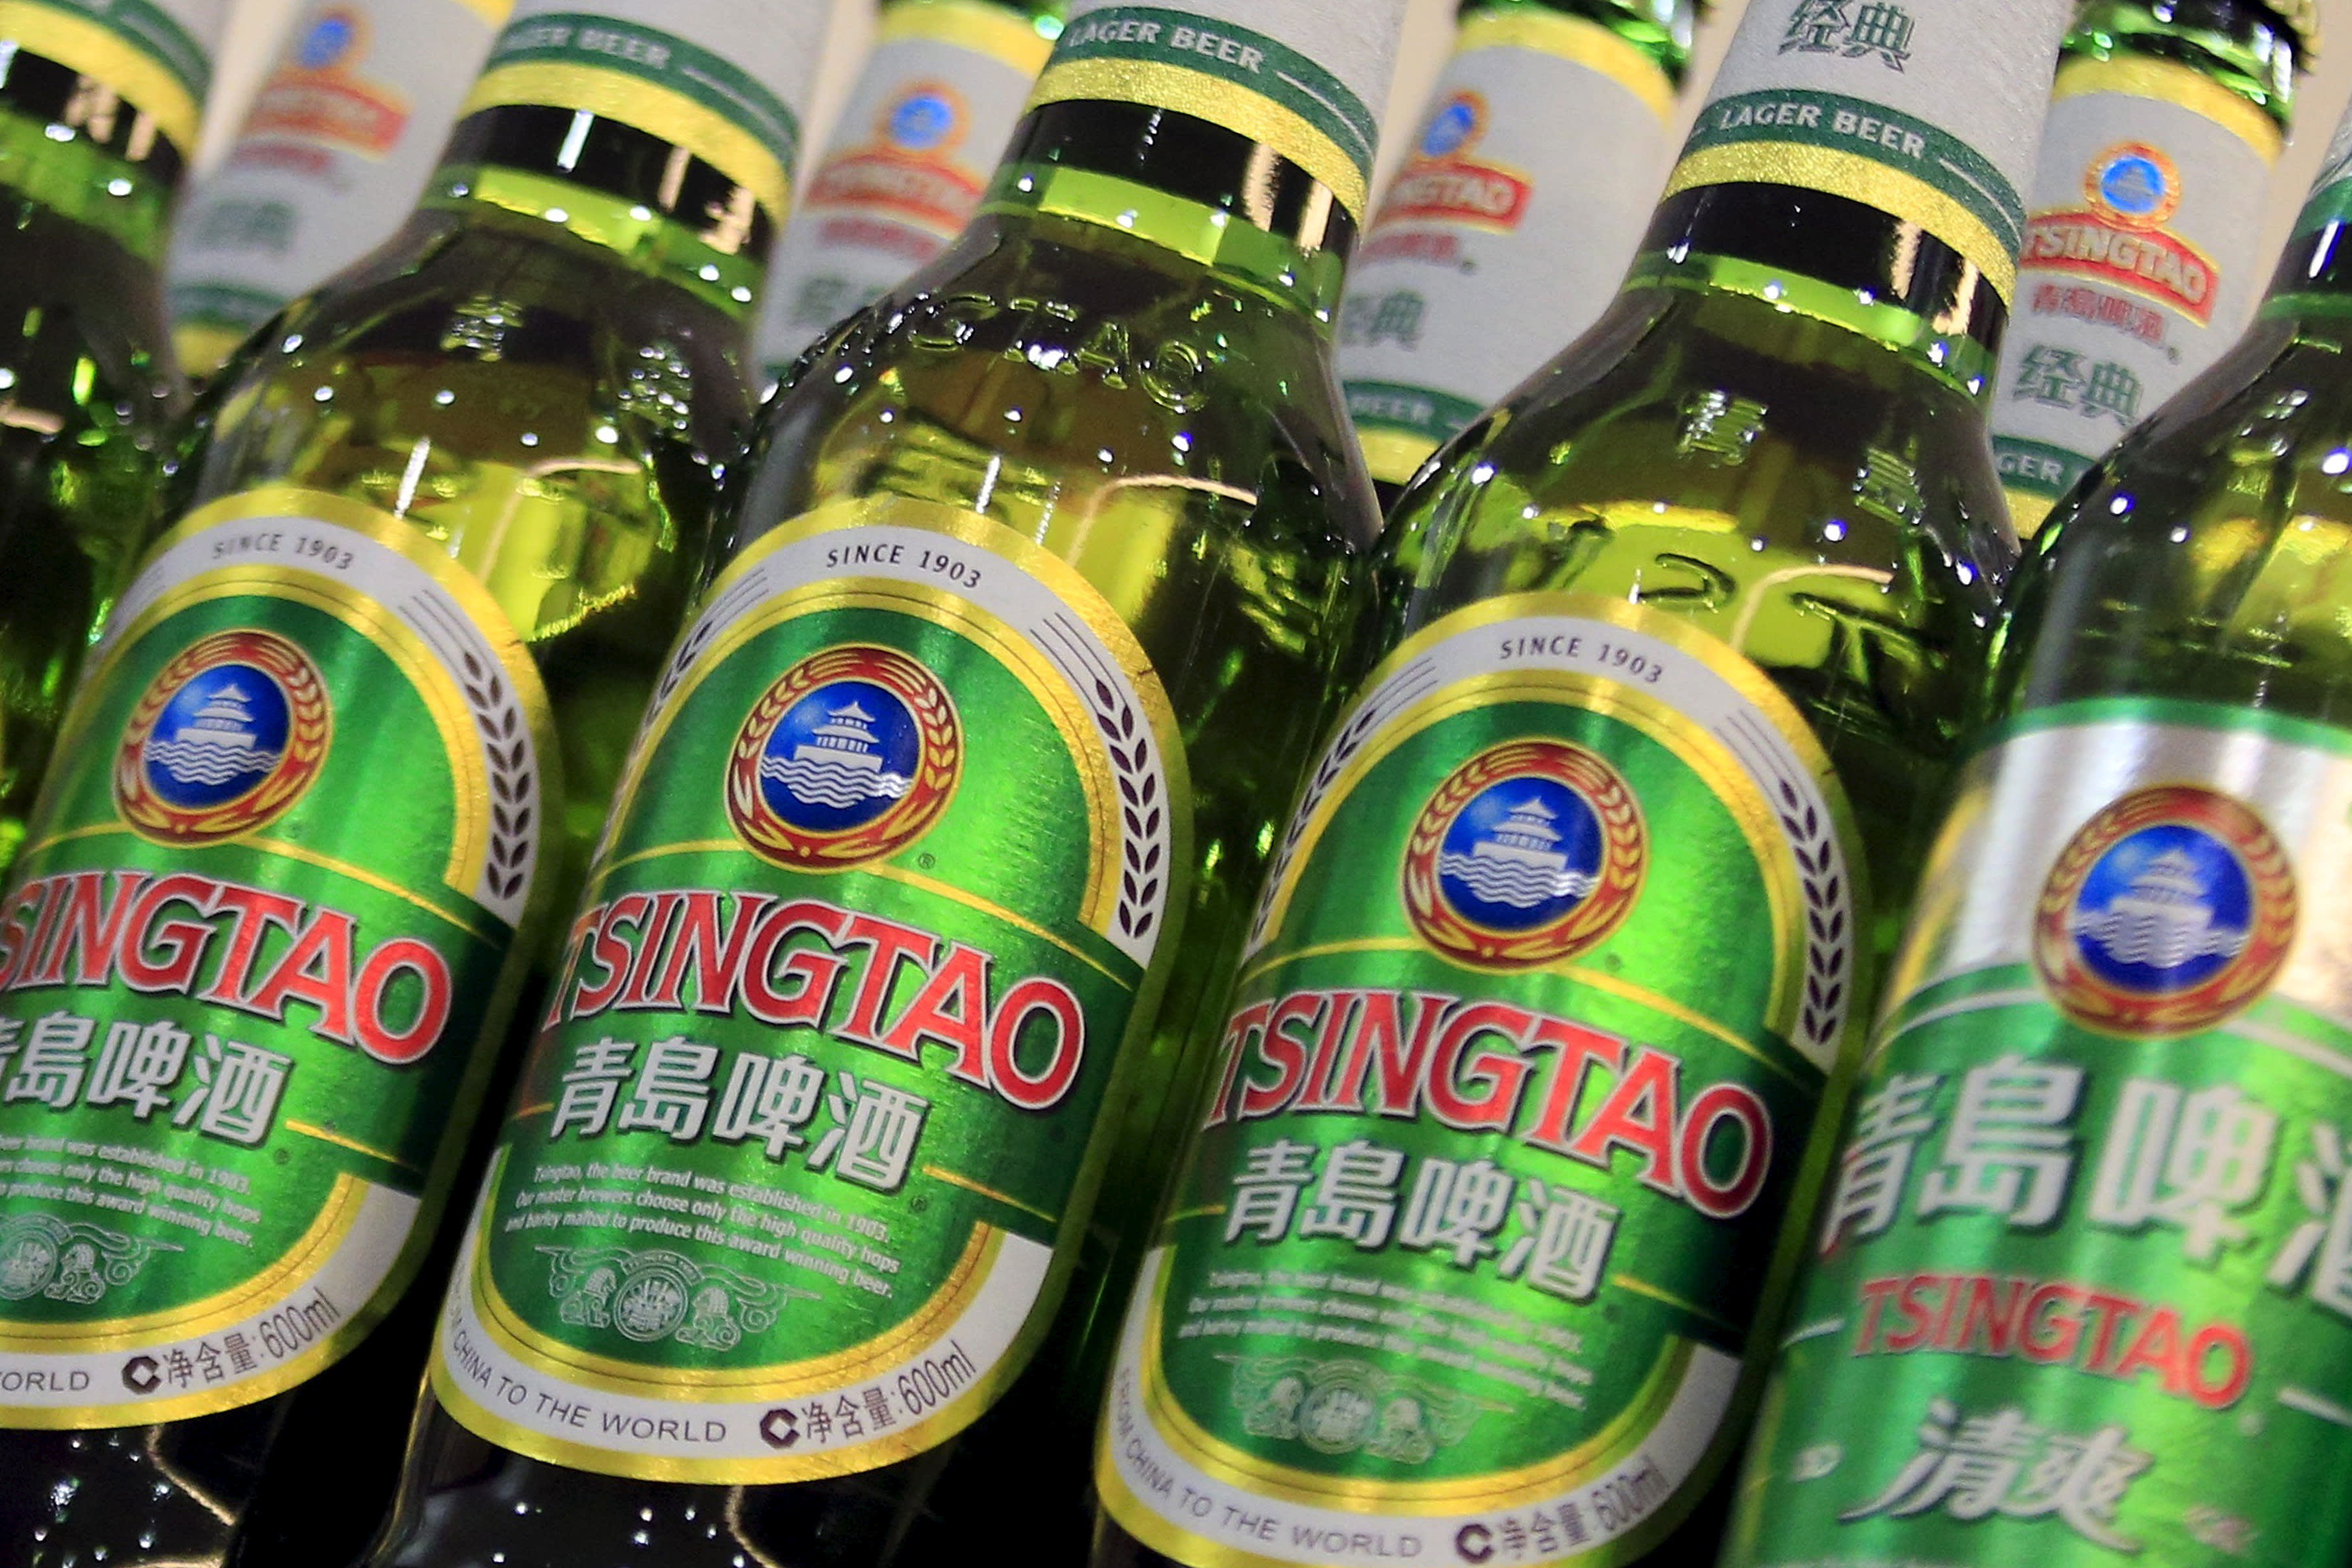 يستجيب تسينغتاو للفيديو الذي انتشر على نطاق واسع لعامل البيرة وهو يتبول في خزان